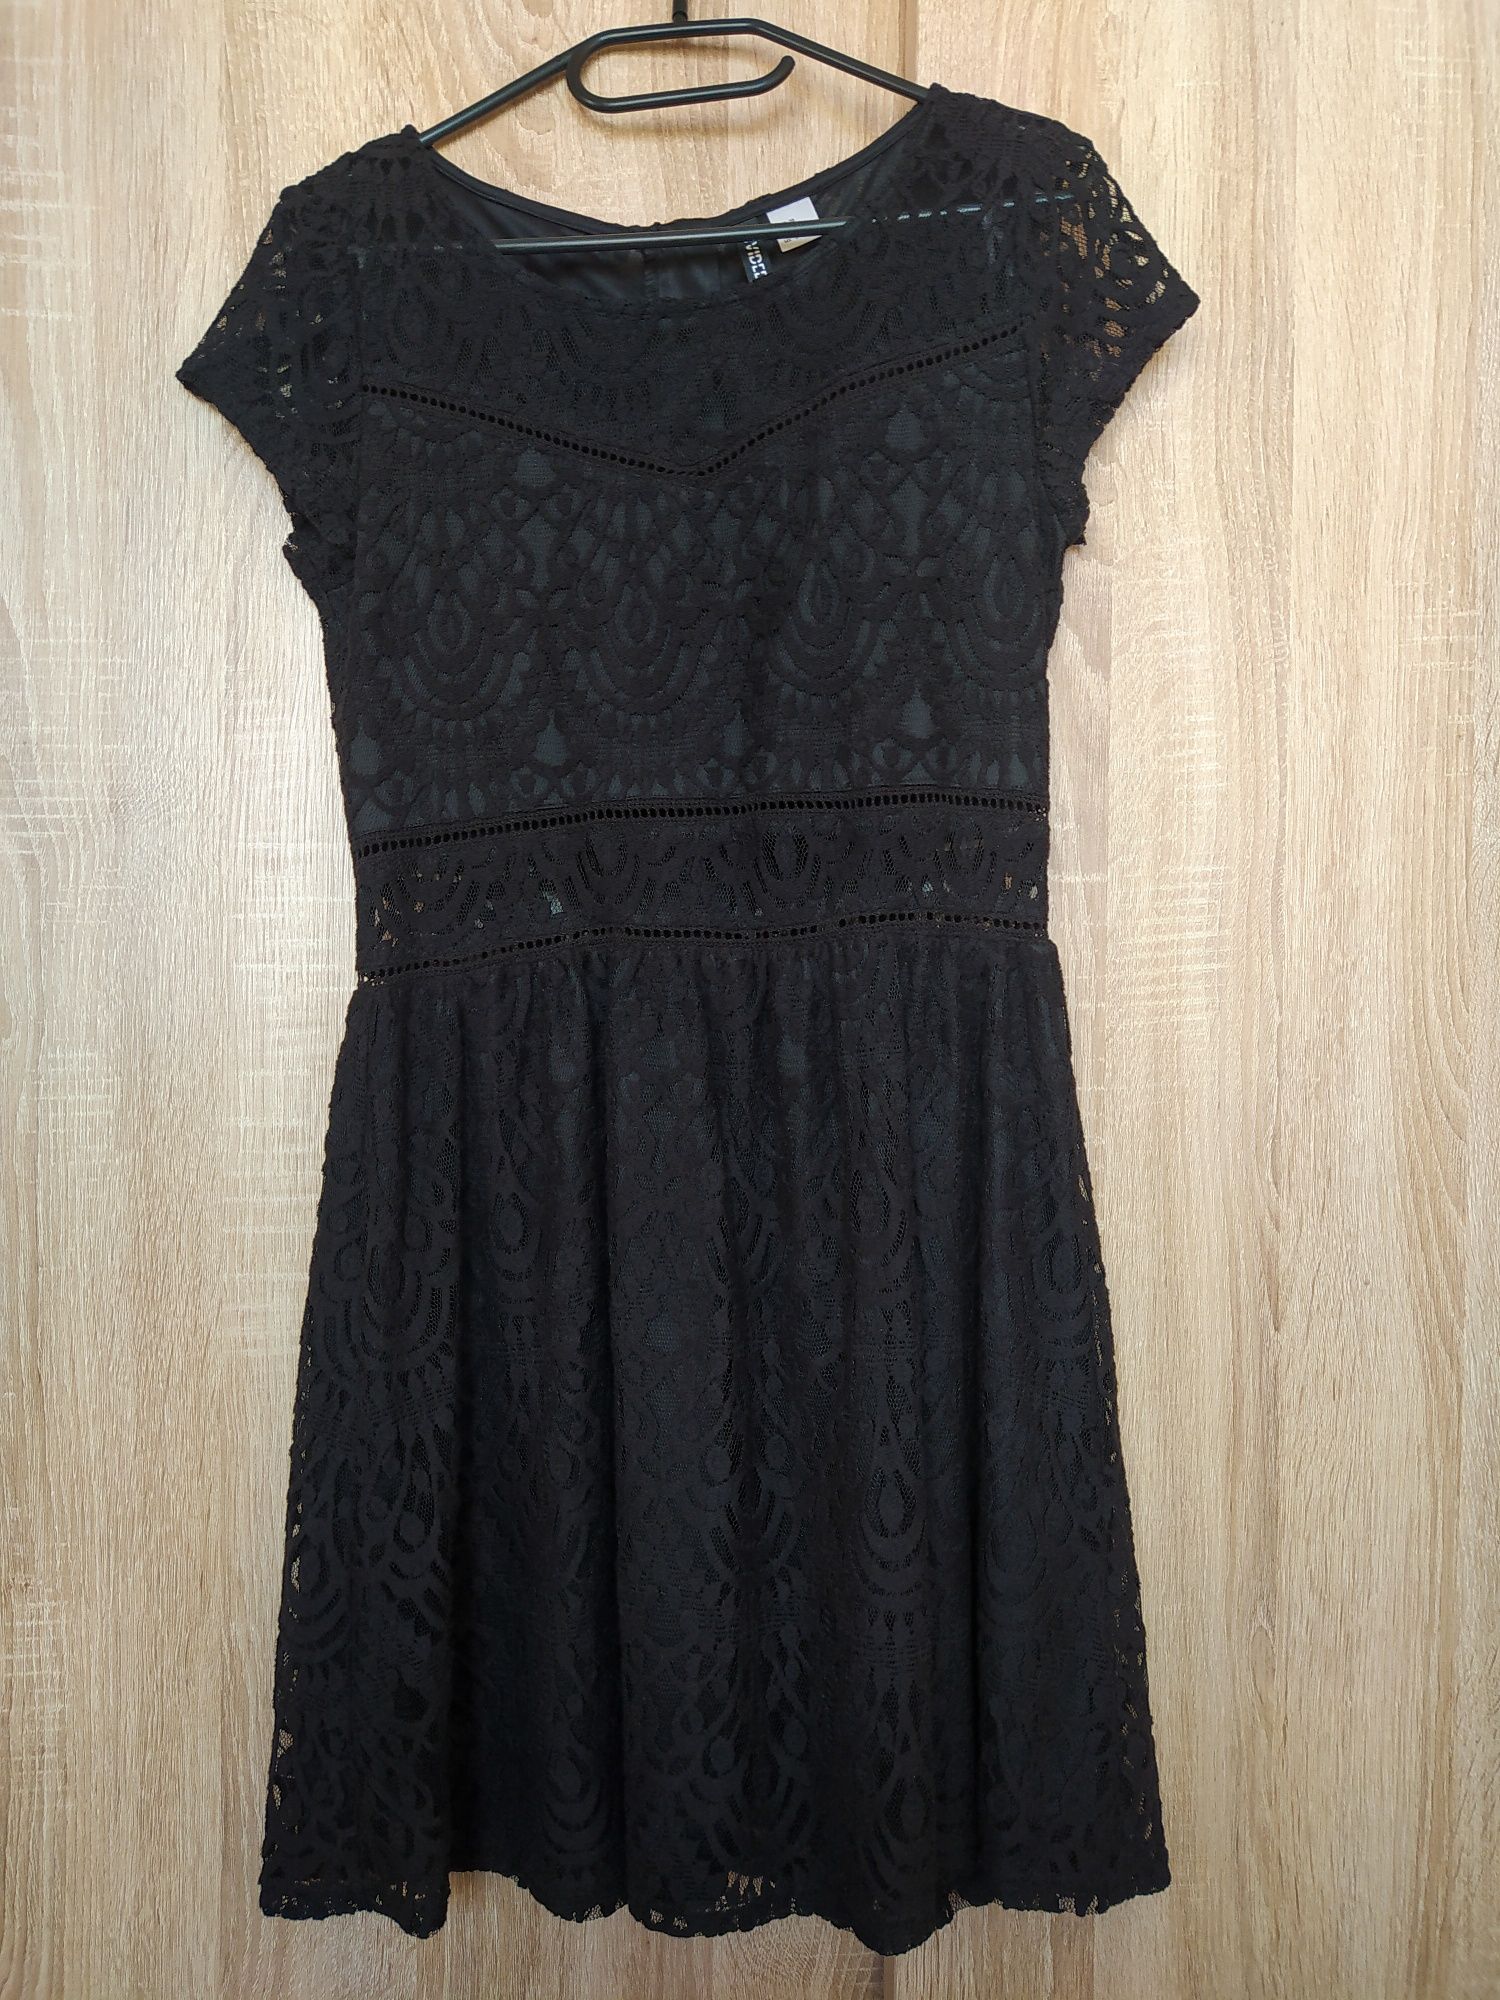 Czarna koronkowa sukienka H&M rozmiar 38 JAK NOWA